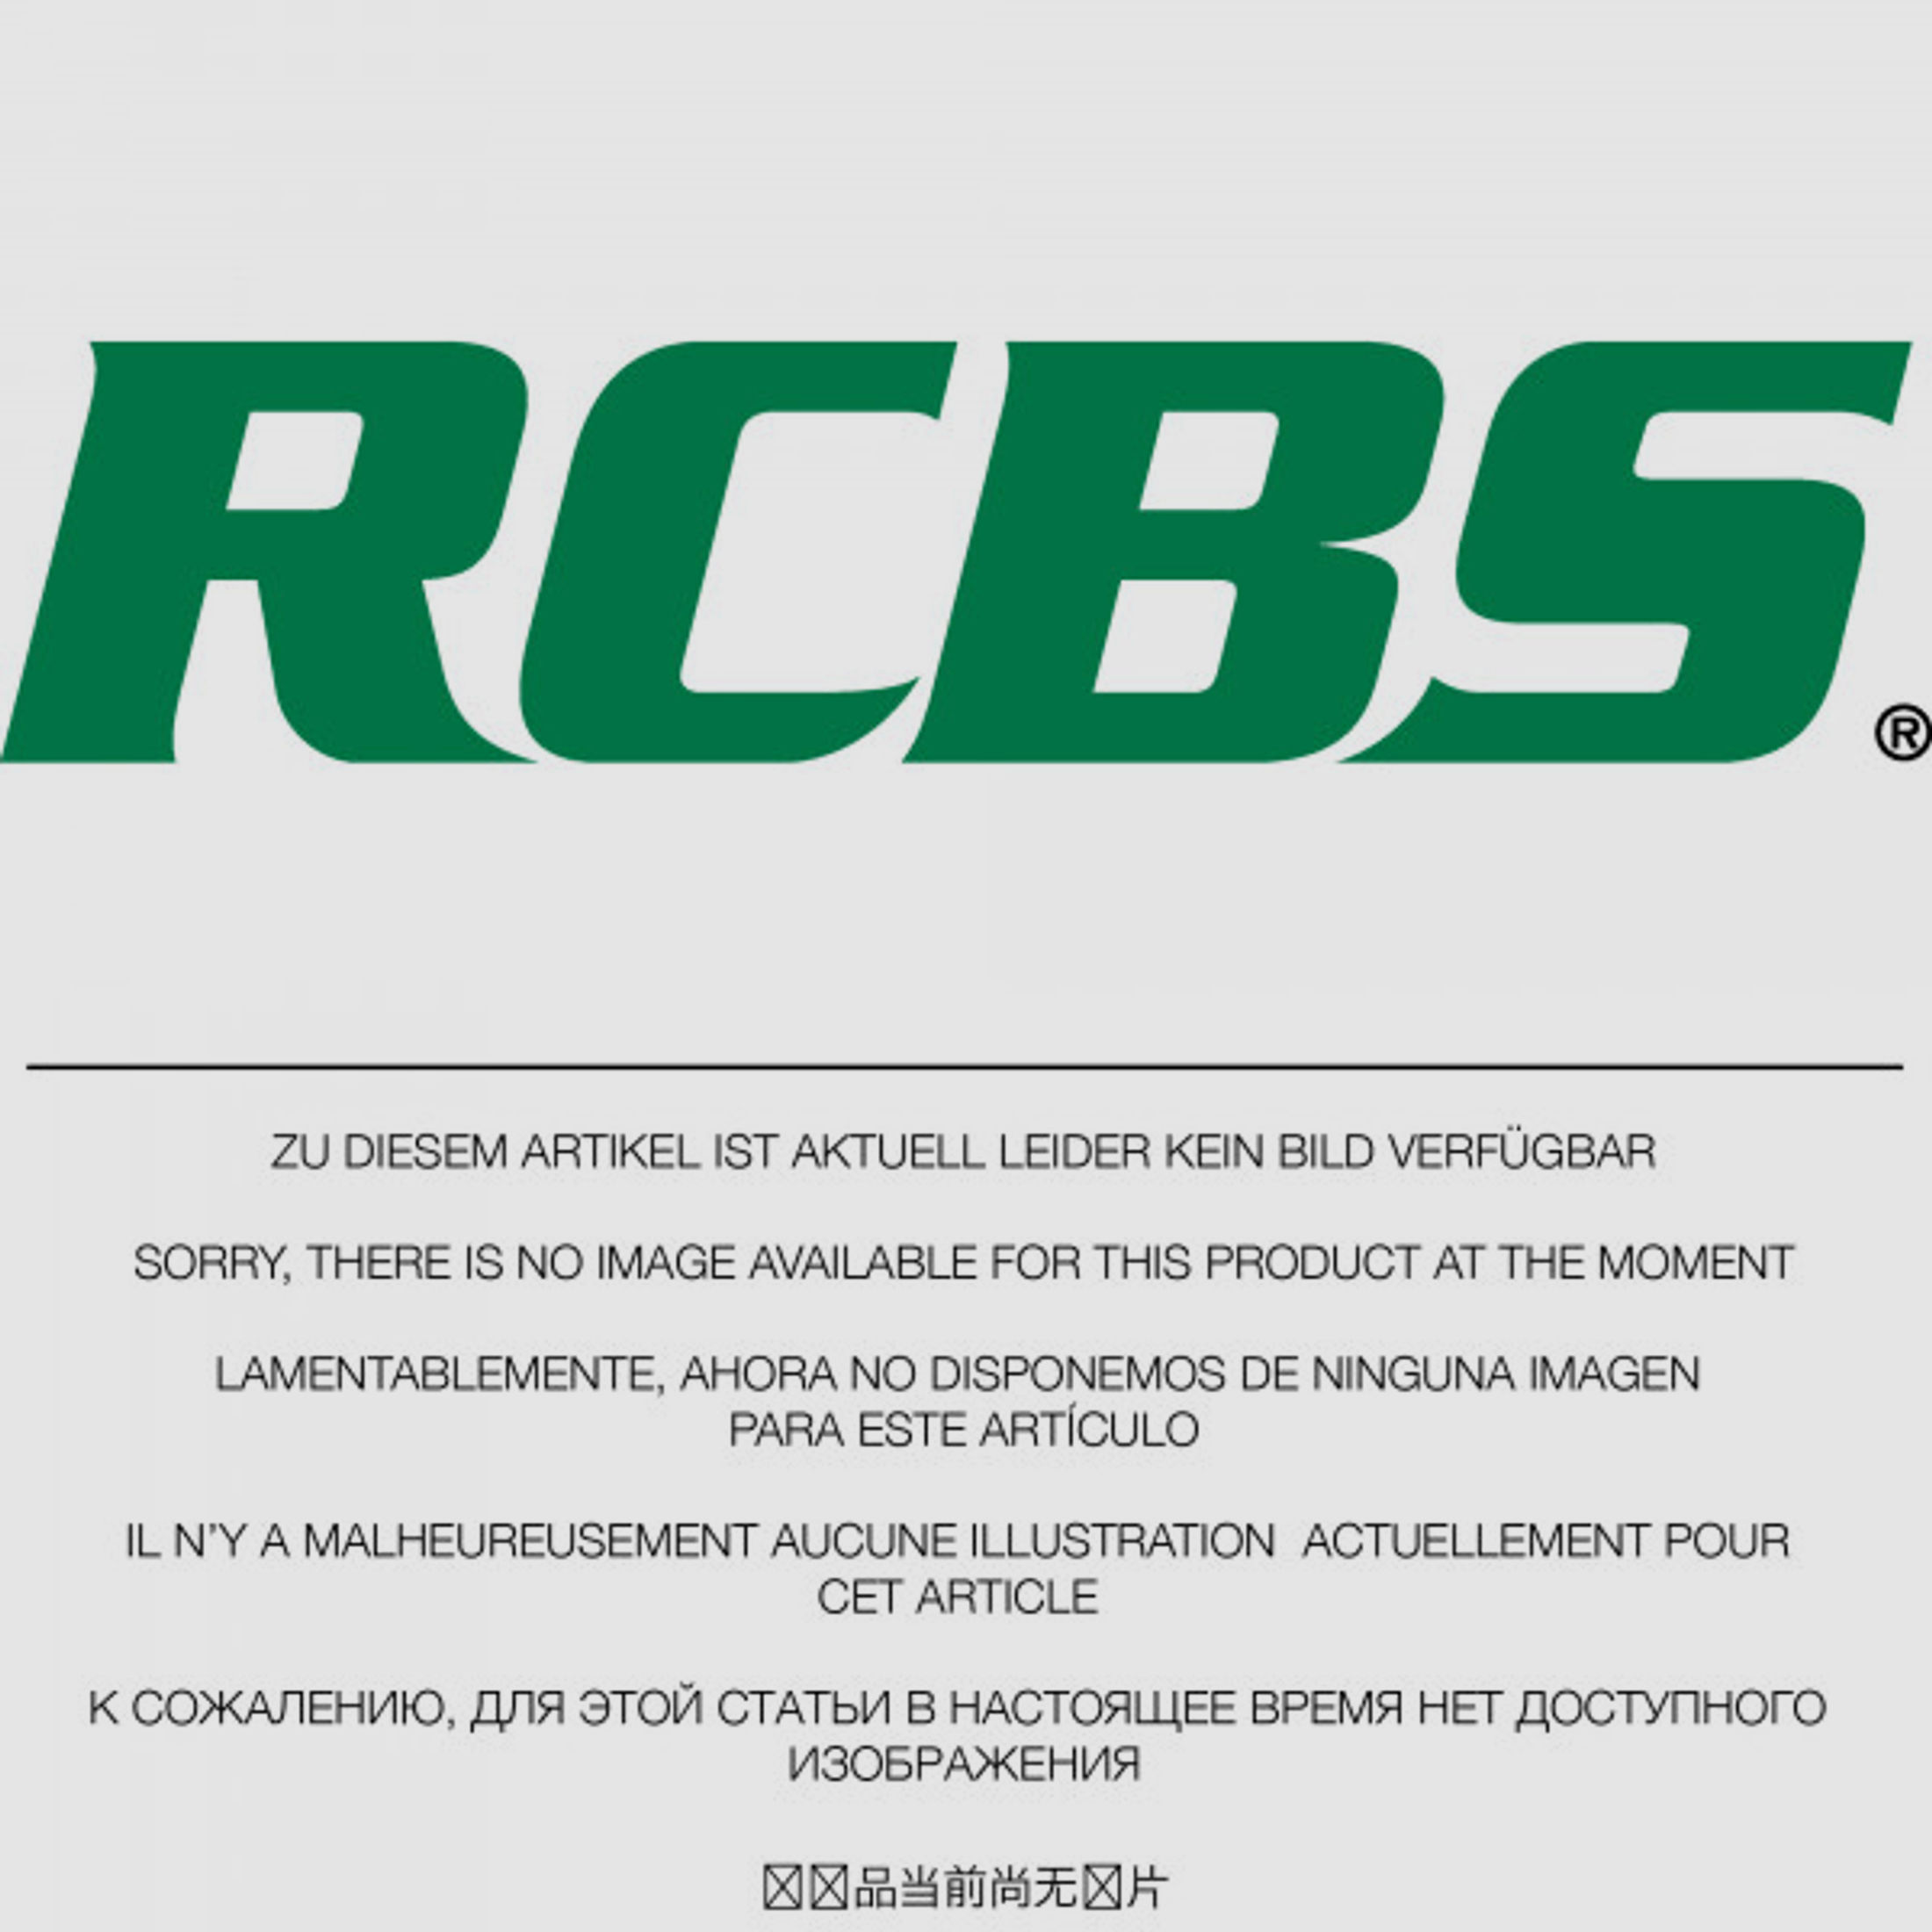 RCBS Lube-A-Matic Top Punch Geschoss Setzstempel Nr. 638 #85638